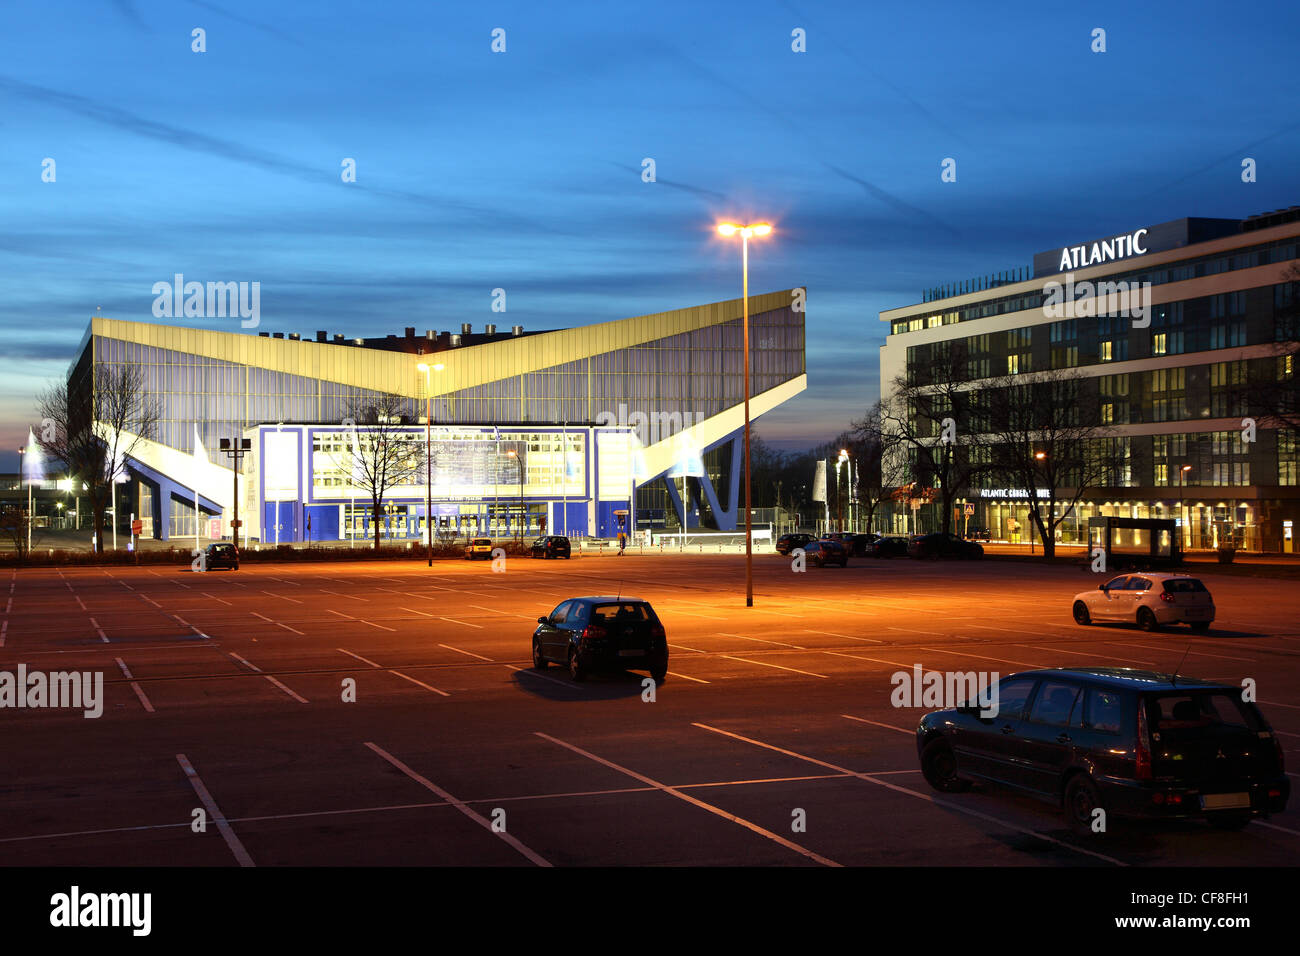 Grugahalle, un evento, concierto, music hall y Atlantic Congress Hotel. Essen, Alemania. Foto de stock